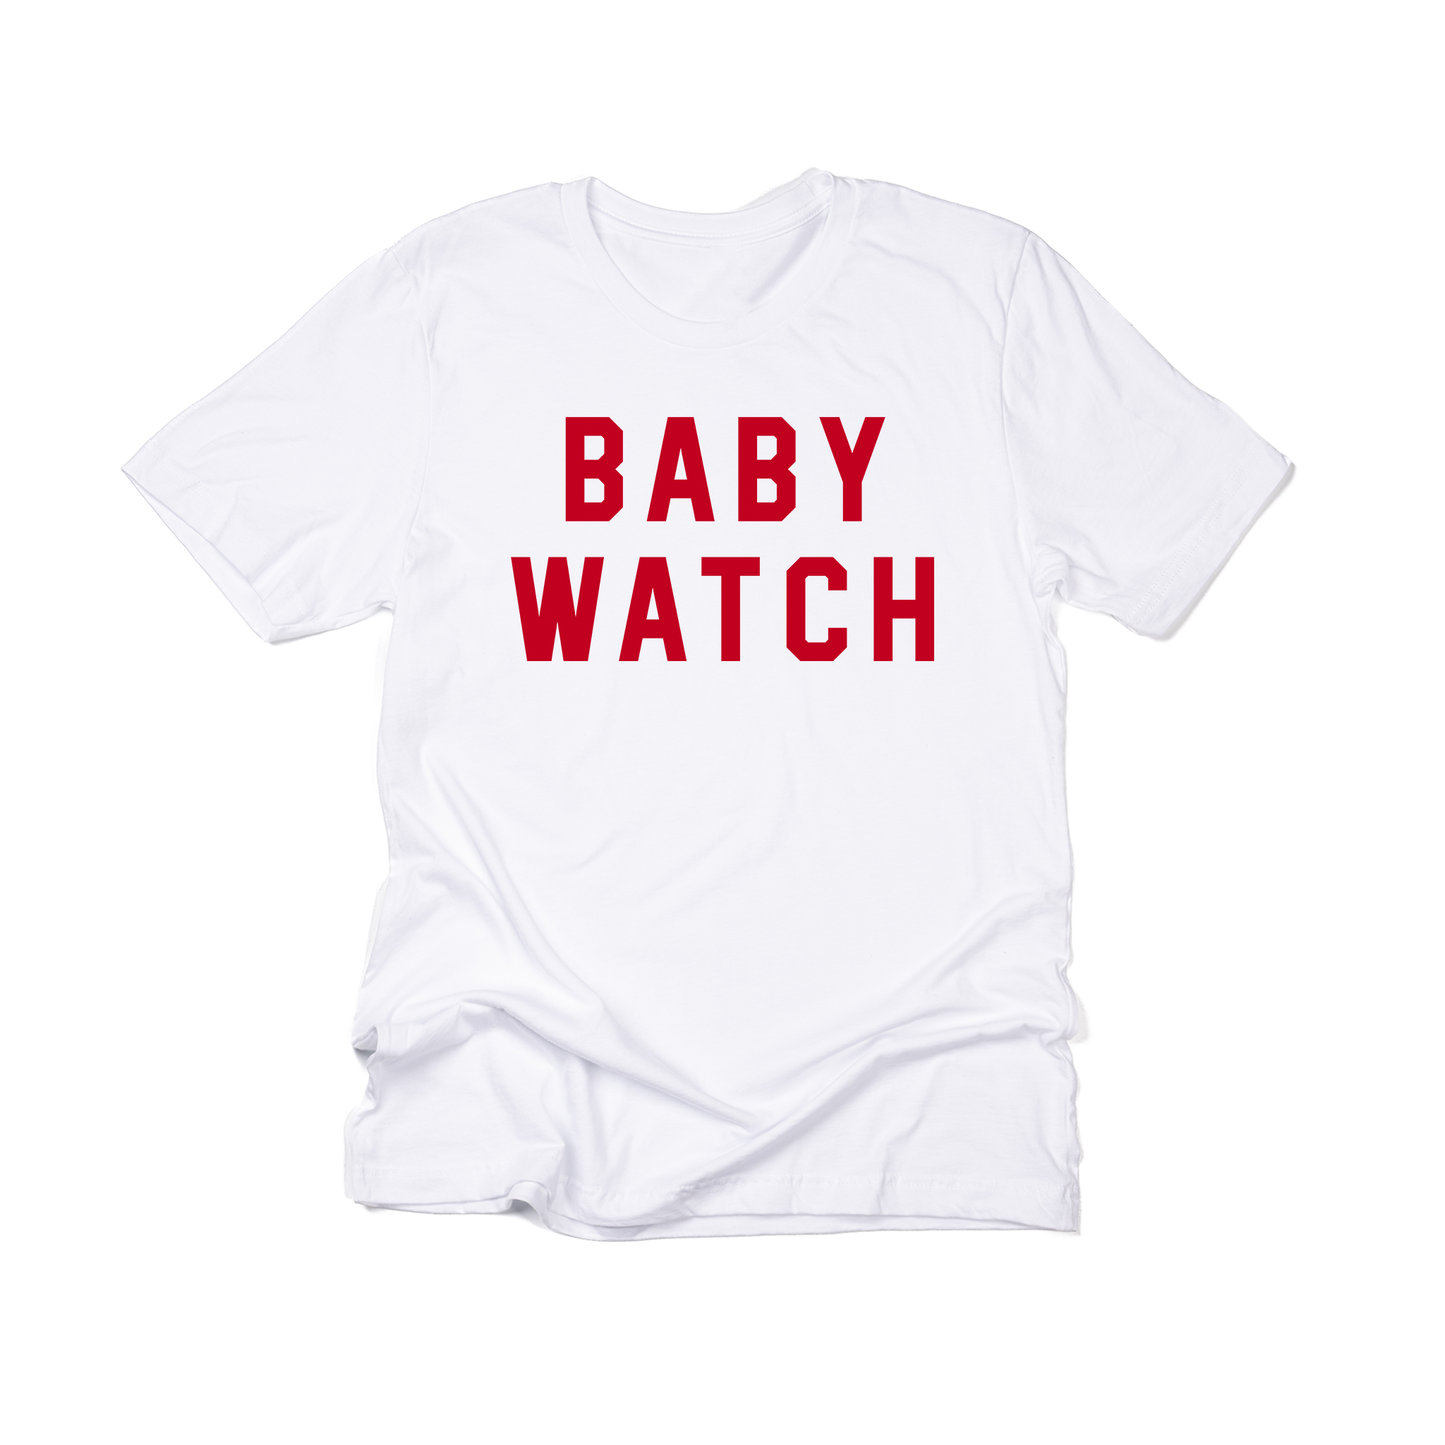 Baby Watch - Tee (White)